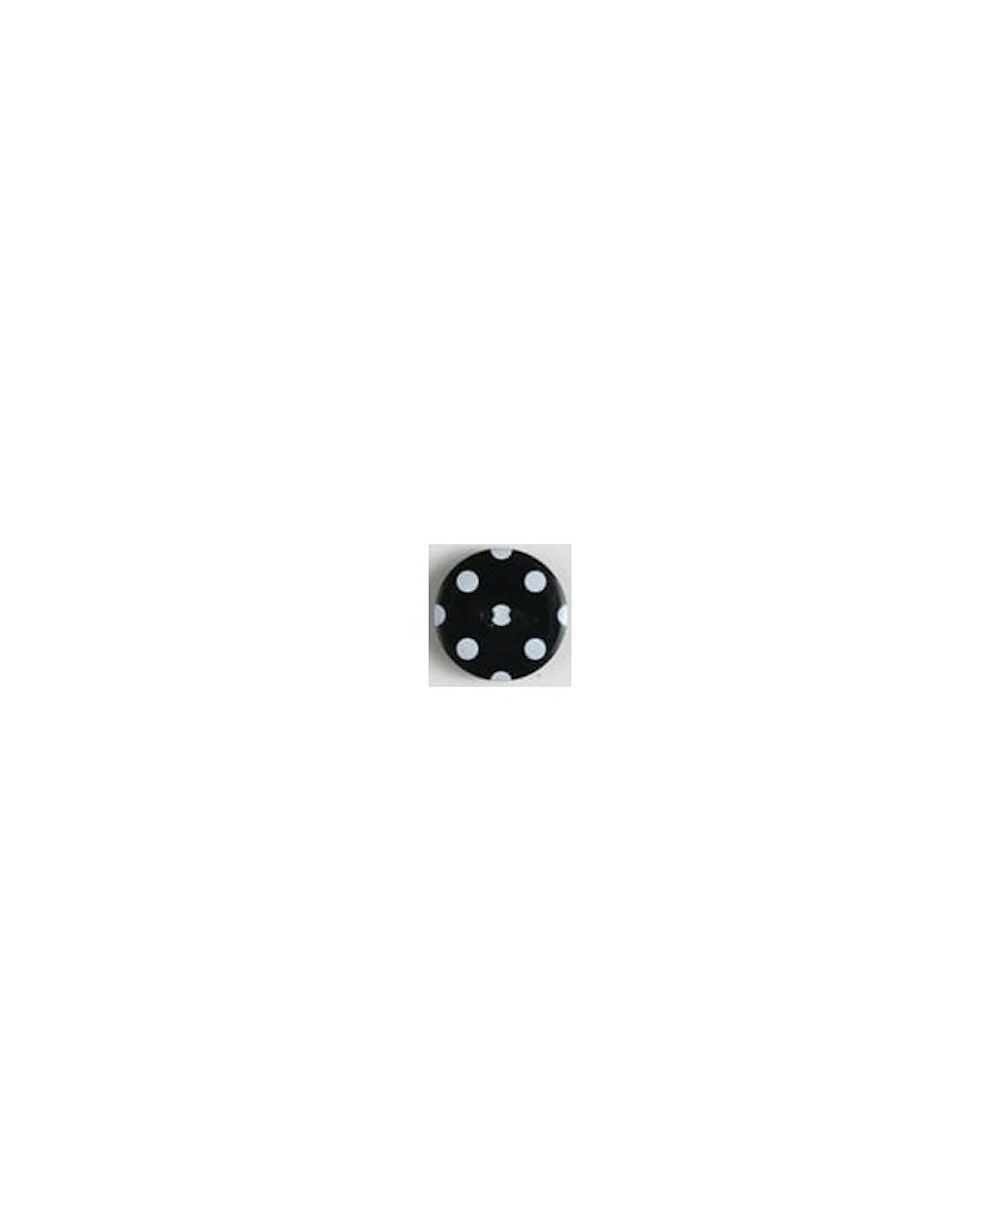 Polyamidknopf rund, mit schwarzen Pünktchen bedruckt, 2-Loch. 25 mm